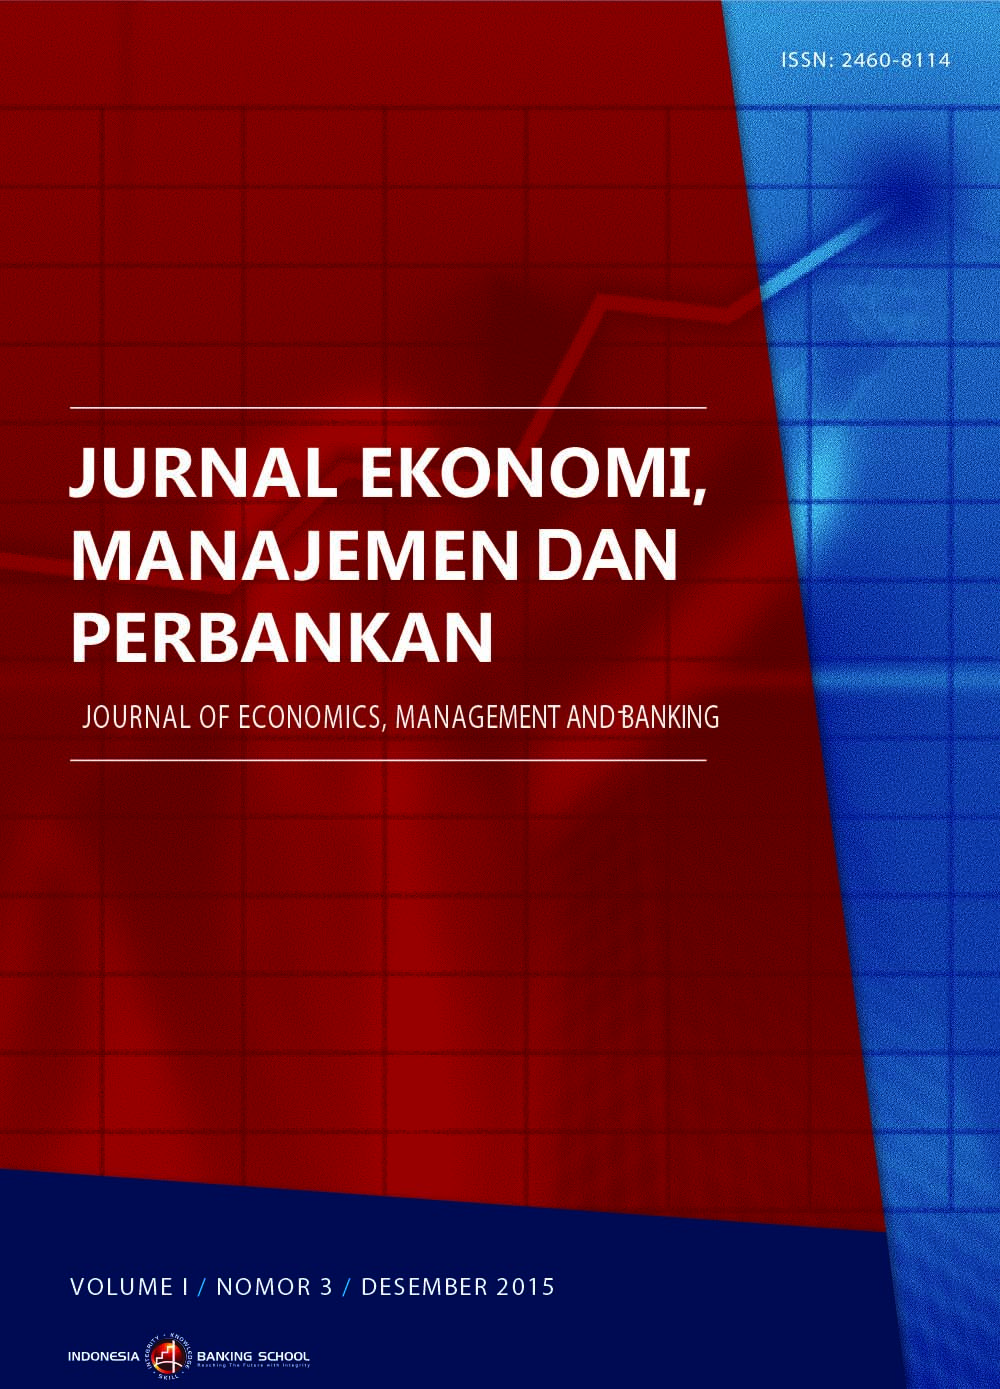 					View Vol. 1 No. 3: Jurnal Ekonomi, Manajemen dan Perbankan (Journal of Economics, Management and Banking) Volume 1 Nomor 3, Desember 2015
				